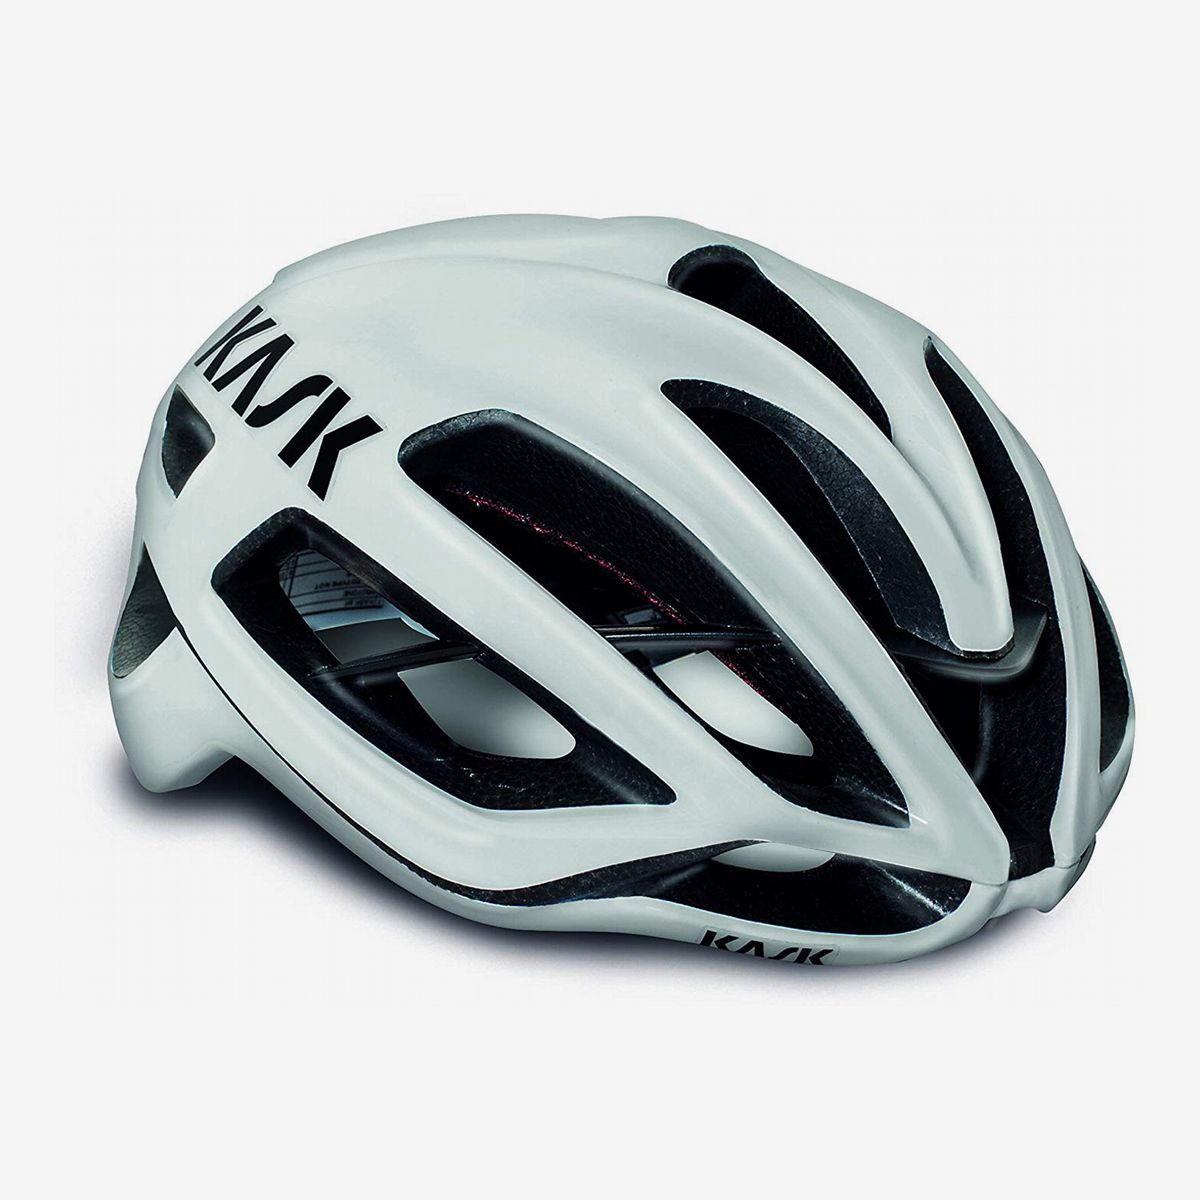 top road bike helmets 2020